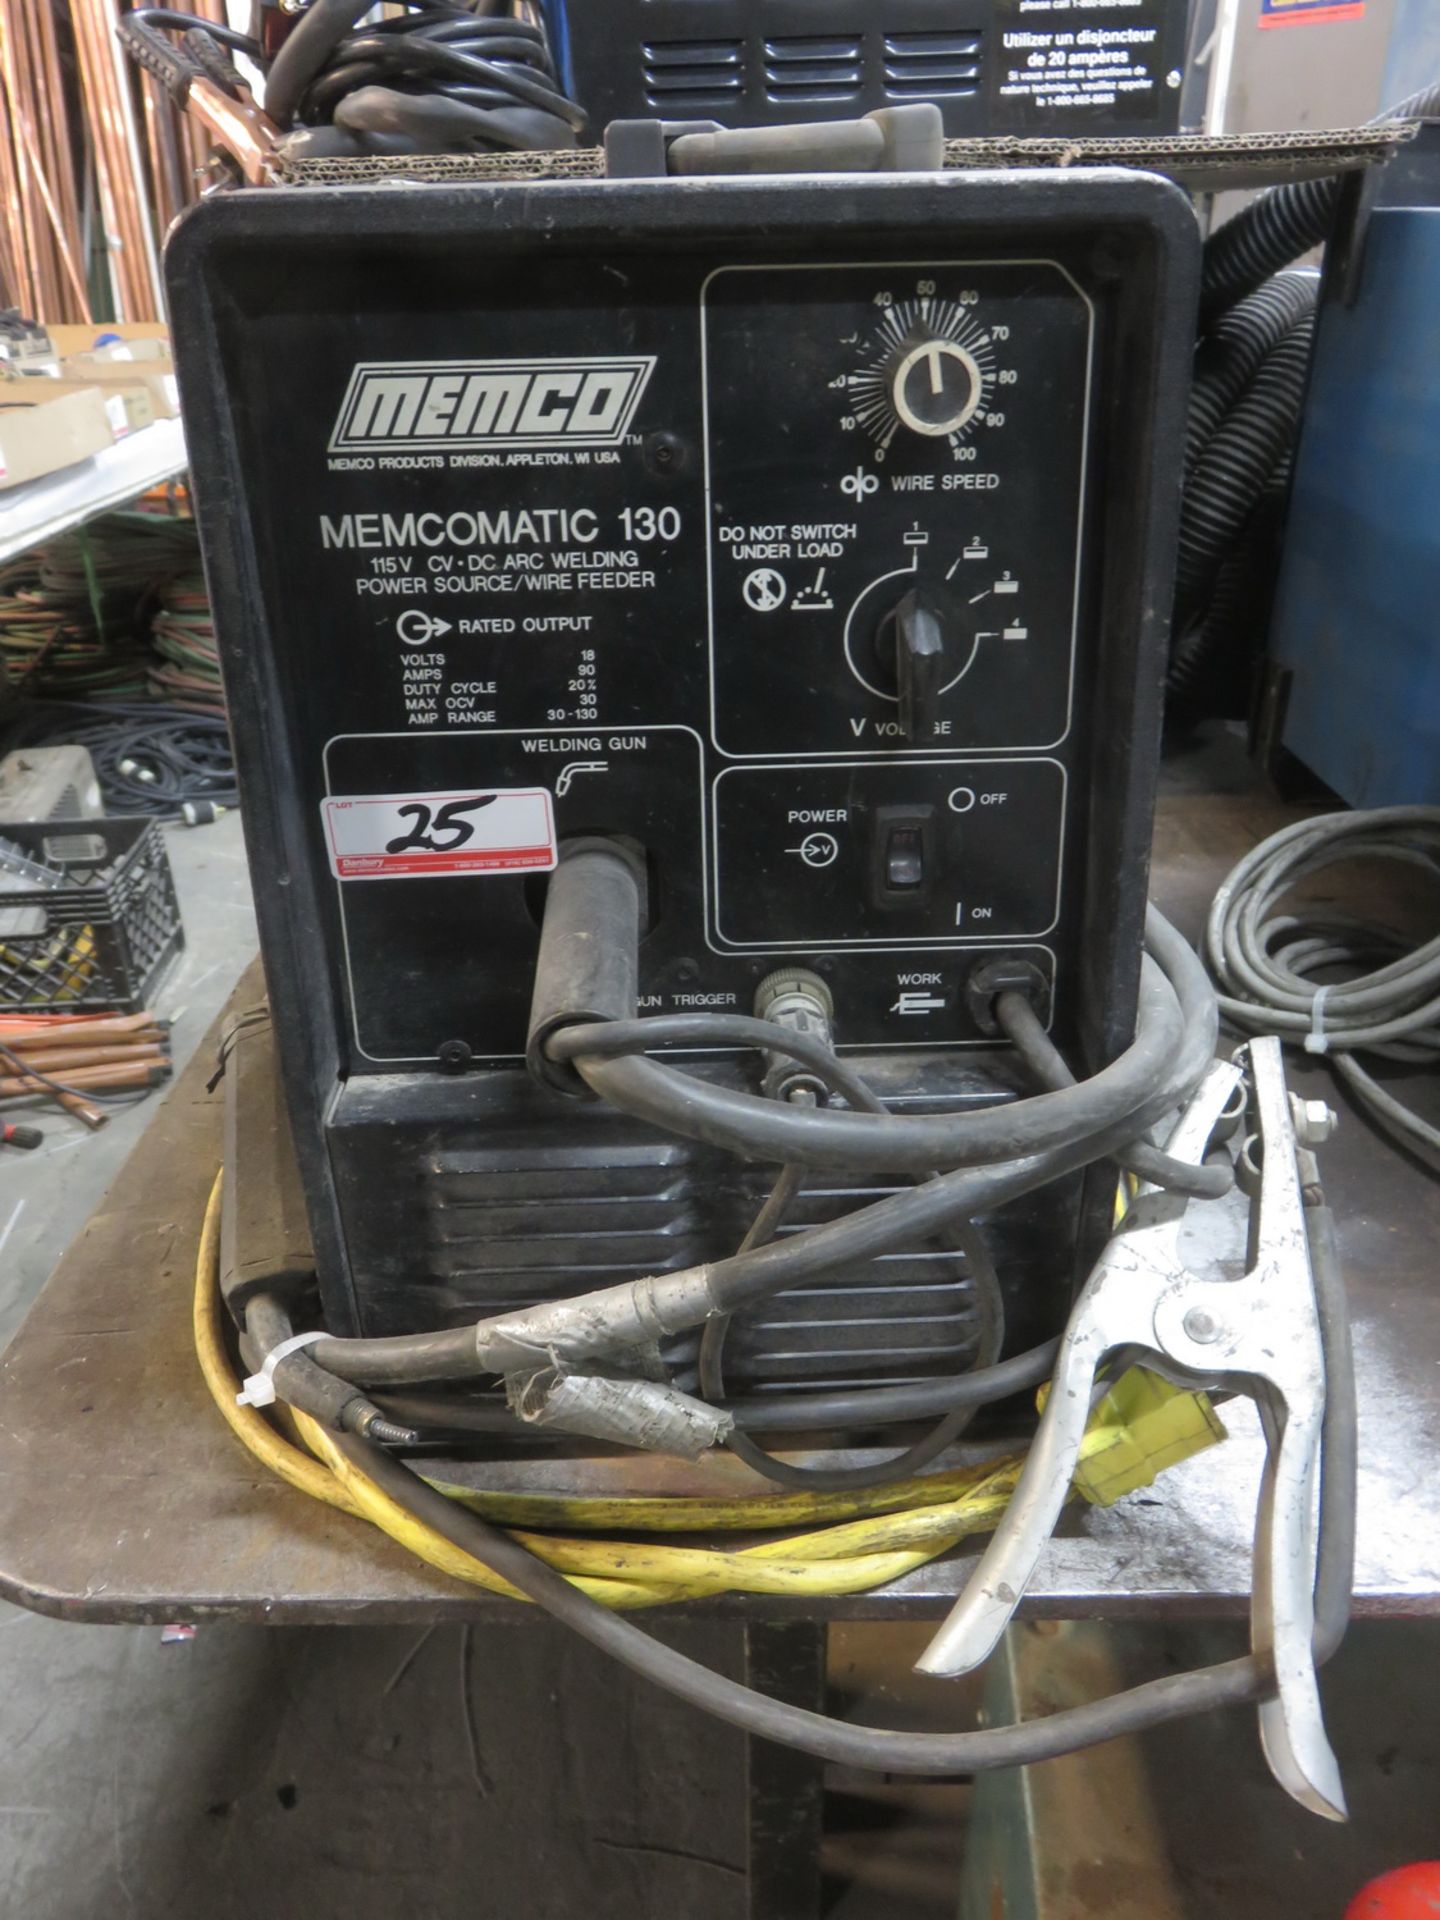 MEMCO MEMCOMATIC 130, 115V, 90AMP, AMP RANGE 30-130 MIG WELDER